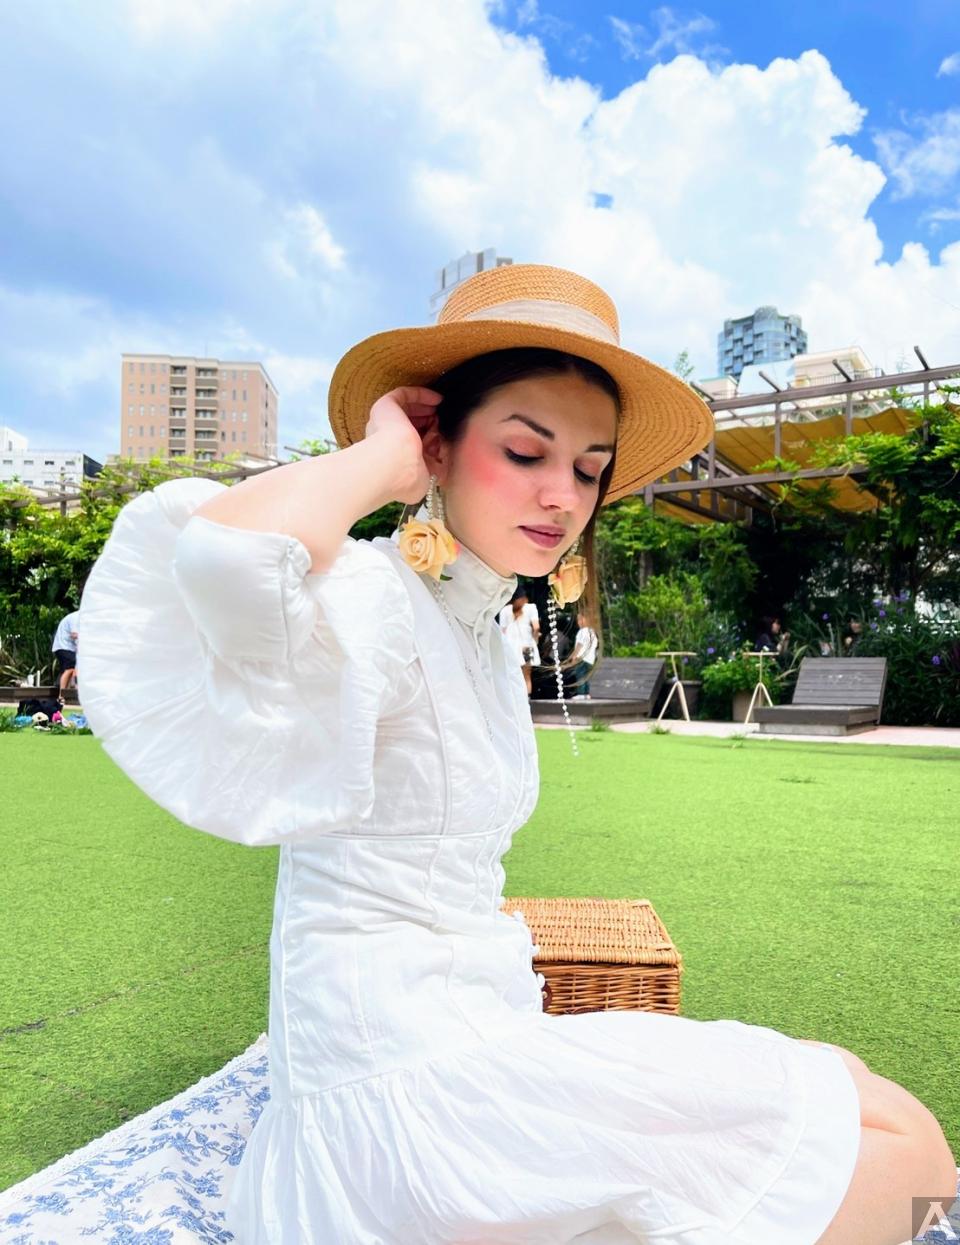 東京外国人モデル事務所アクアモデル所属の白人モデルのアレックス